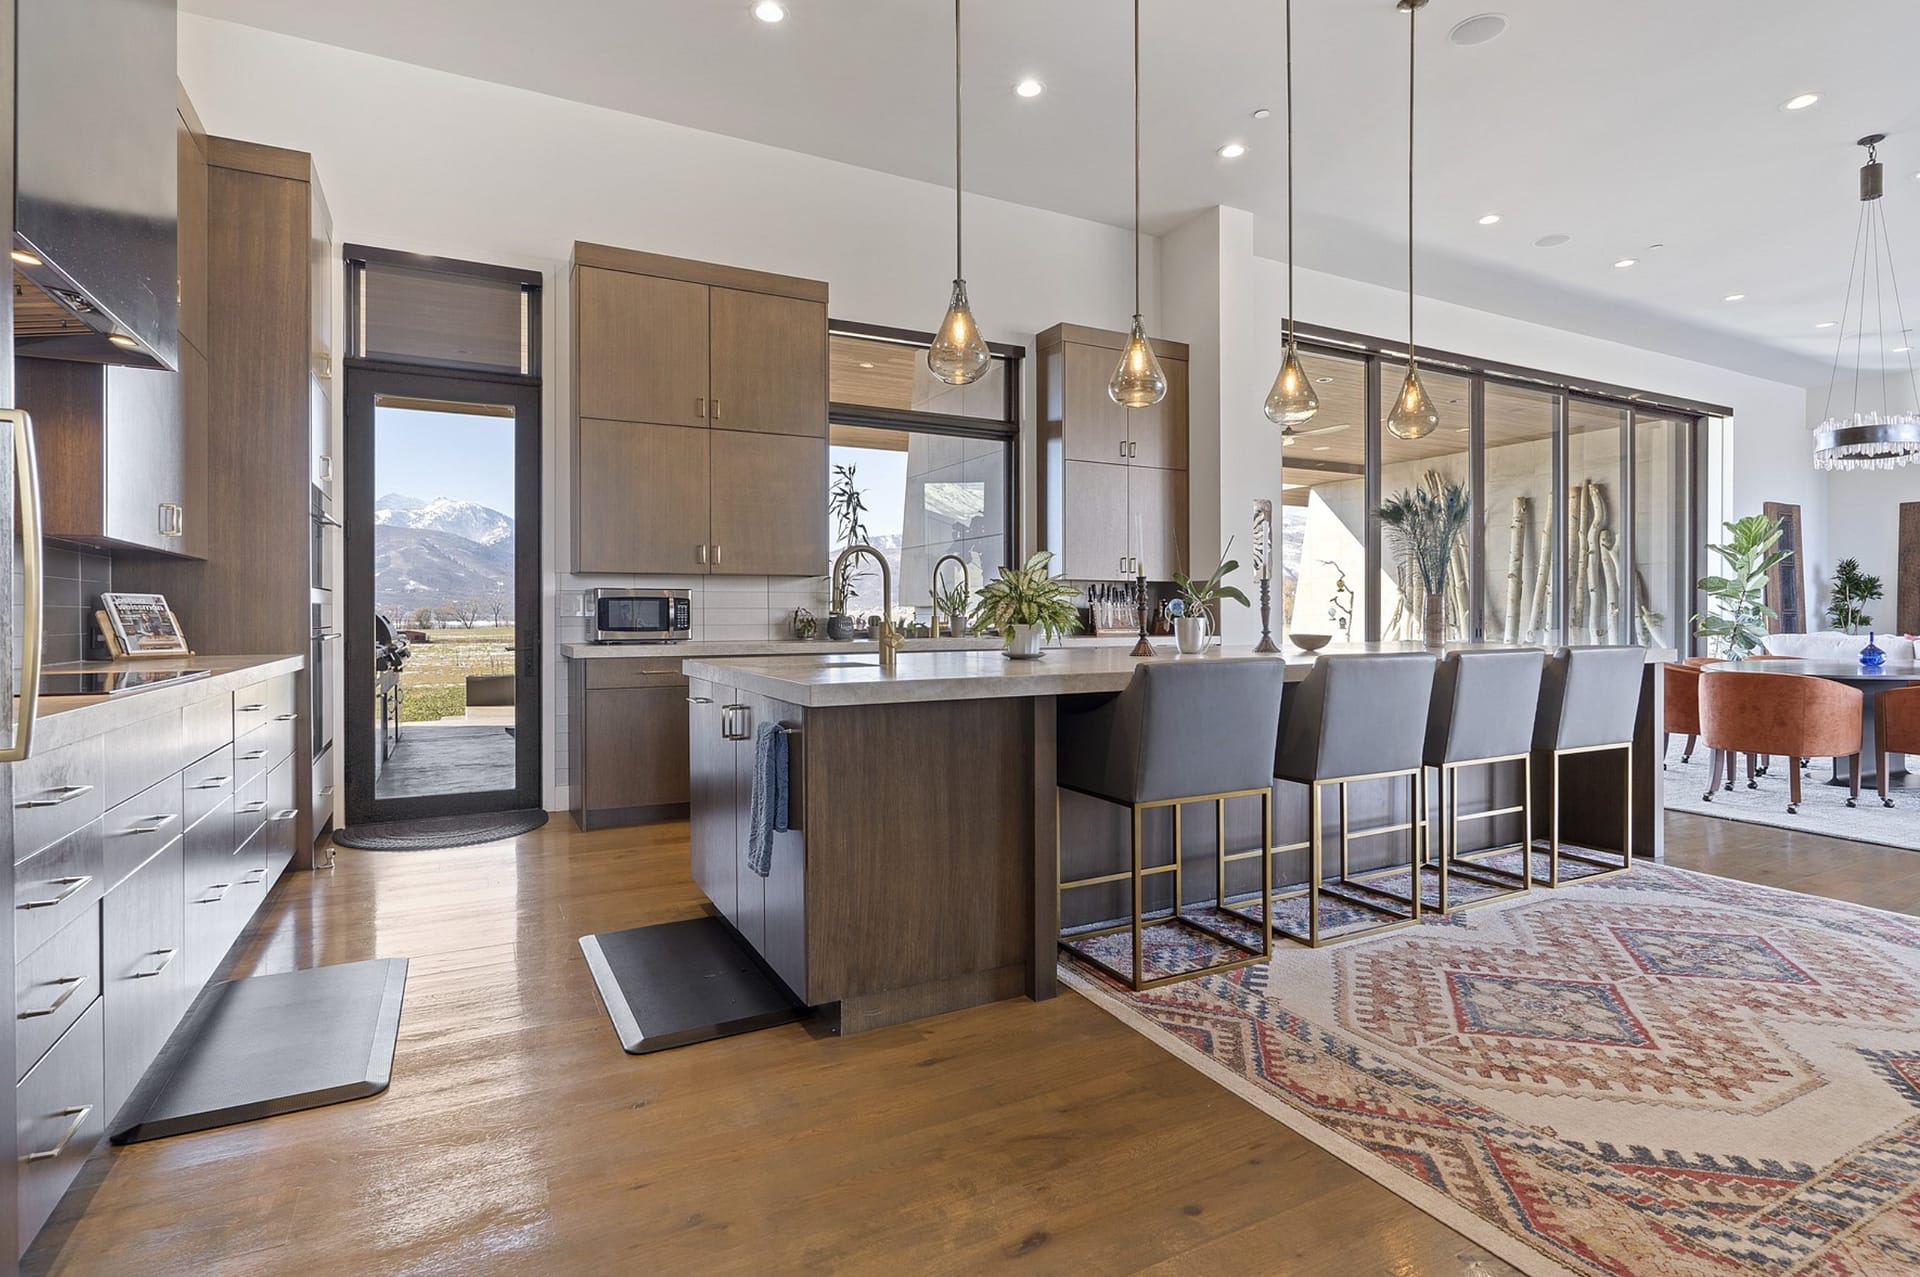 $8 Million Contemporary Home In Huntsville, Utah (PHOTOS)